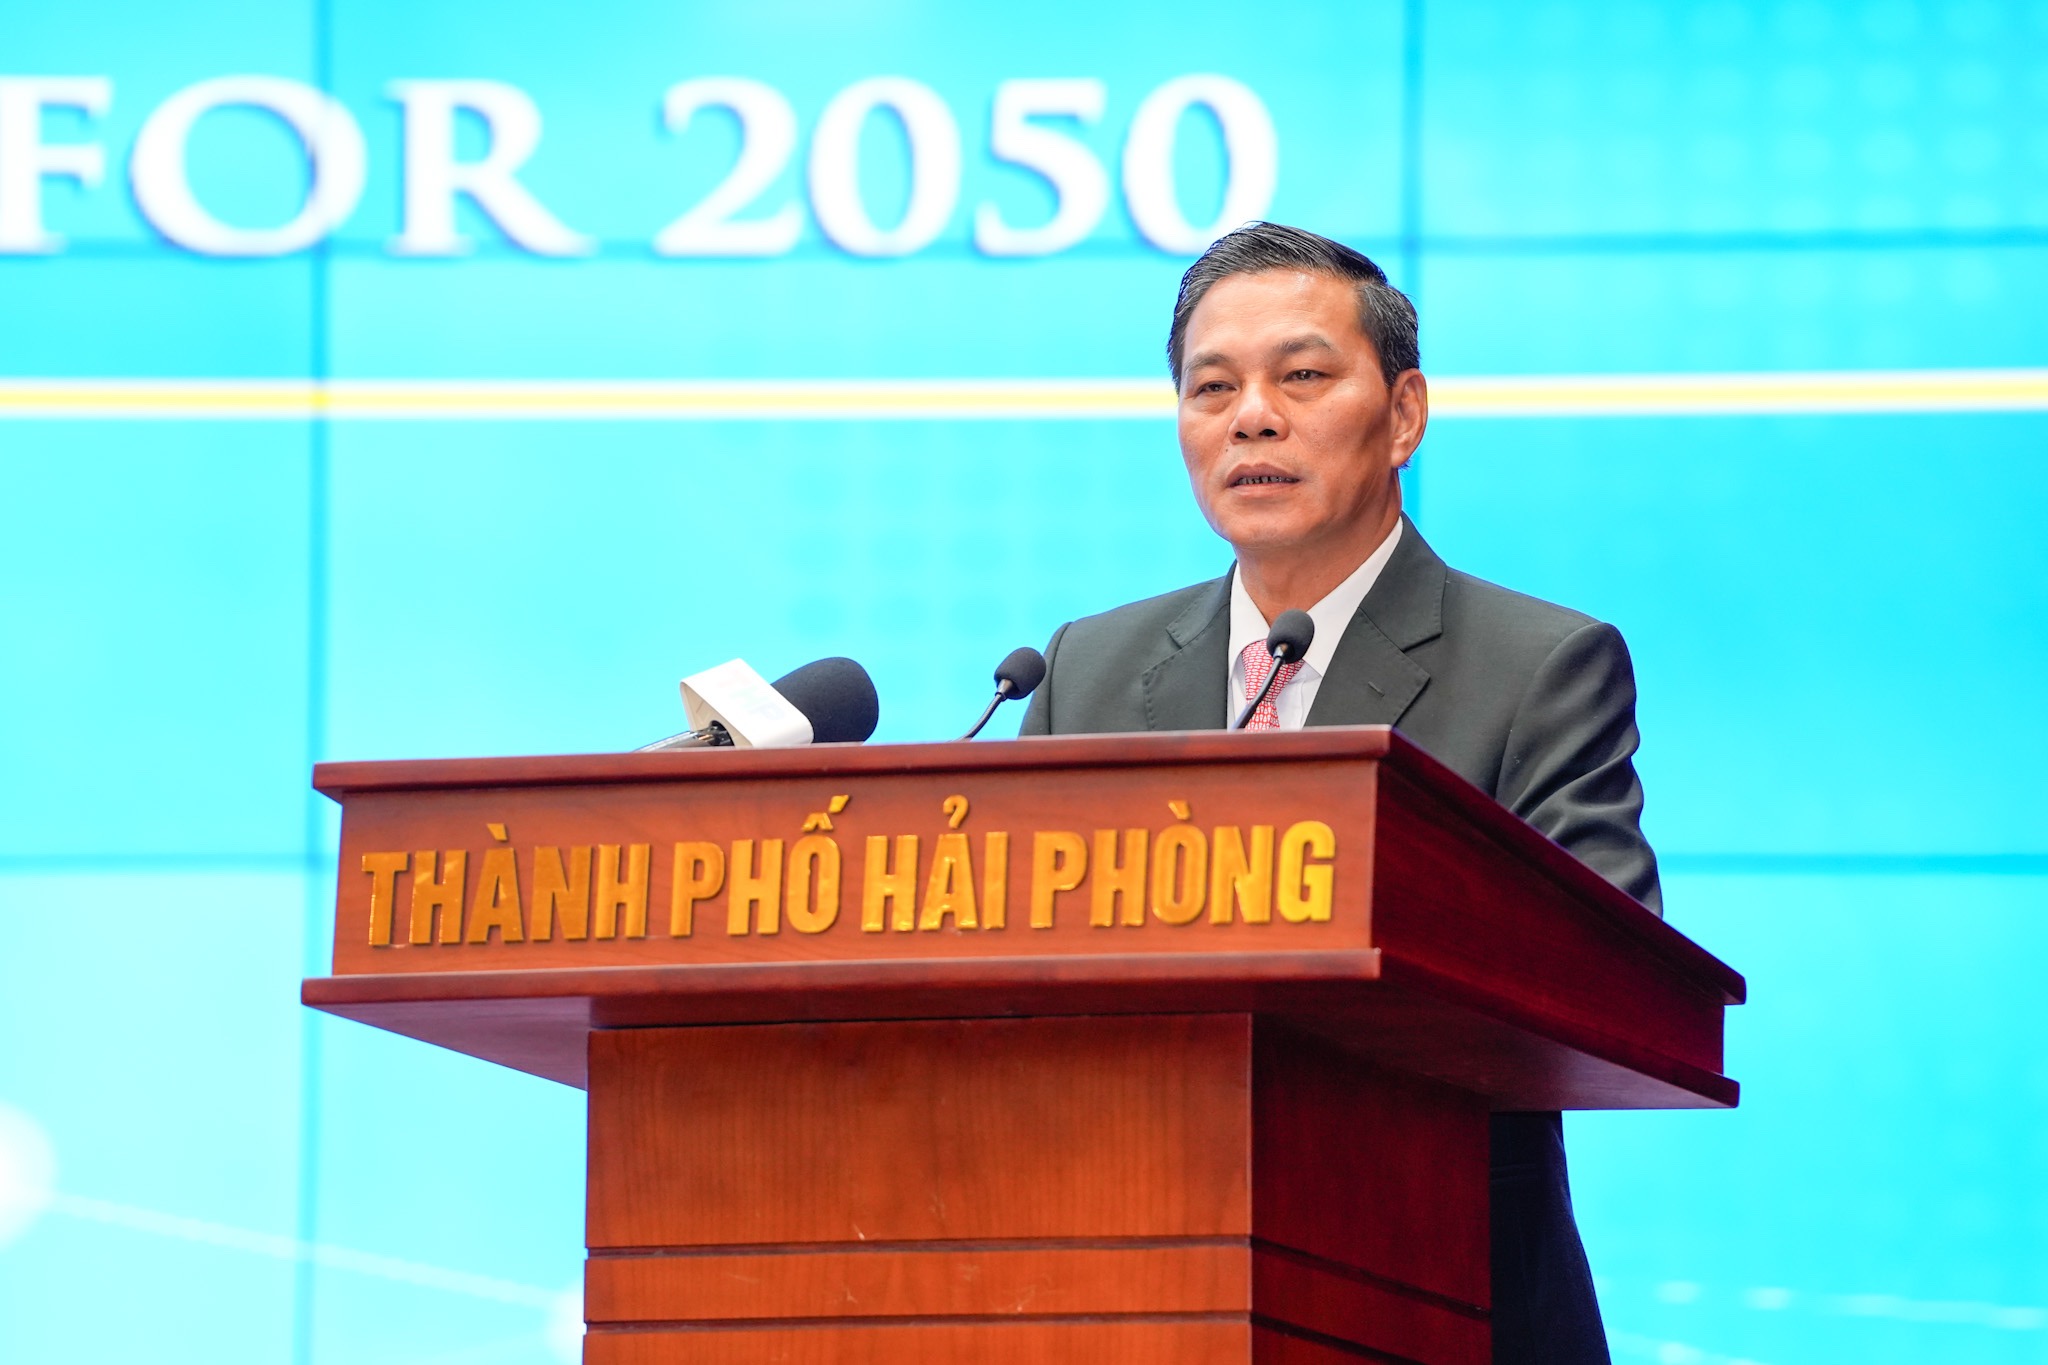 Ông Nguyễn Văn Tùng, Chủ tịch UBND TP. Hải Phòng tiếp thu ý kiến chỉ đạo của Phó Thủ tướng Trần Hồng Hà và phát biểu bế mạc Hội nghị